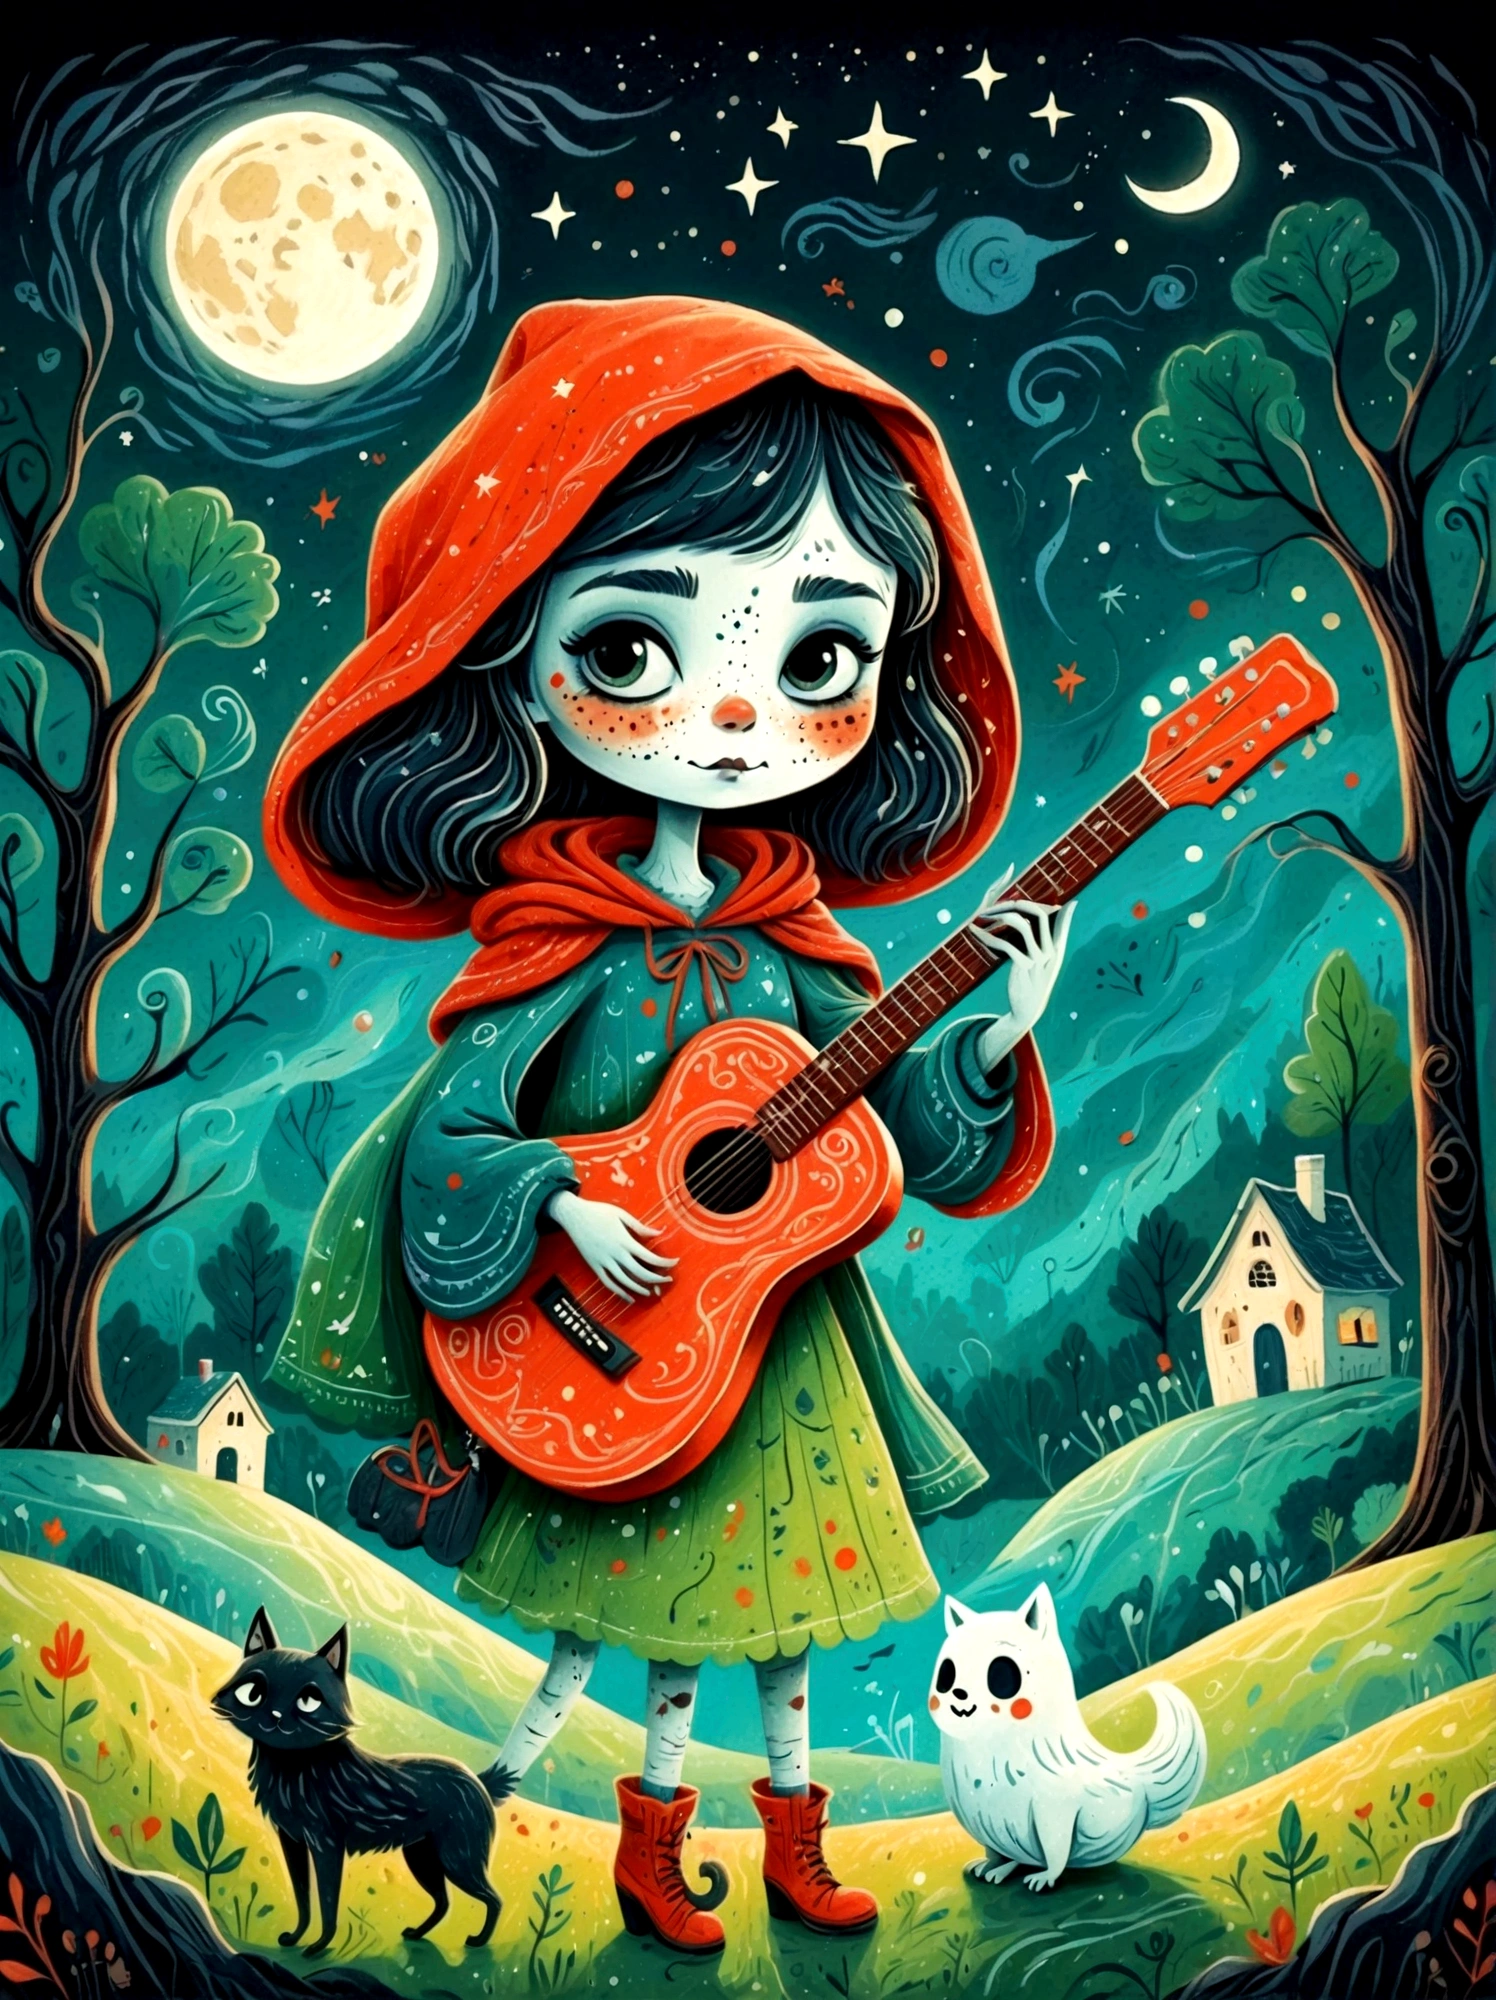 卡通手绘, 1個女孩, 獨自的, 可爱年轻迷人的小红帽女孩，浓浓僵尸妆, 弹奏一把旧吉他，吉他手，幽灵人群，幽灵观察者，演唱會現場，繁星點點的夜晚，陰沉有霧的氣氛，可爱的荒谬，非凡外表的吸引与拒绝，神奇的天真藝術，明亮的蓝色和绿色，调色板是红色, 橙色和黑色的色调，具有粗略的风格, 背景应该有简单的手绘涂鸦图案, 1shxx1